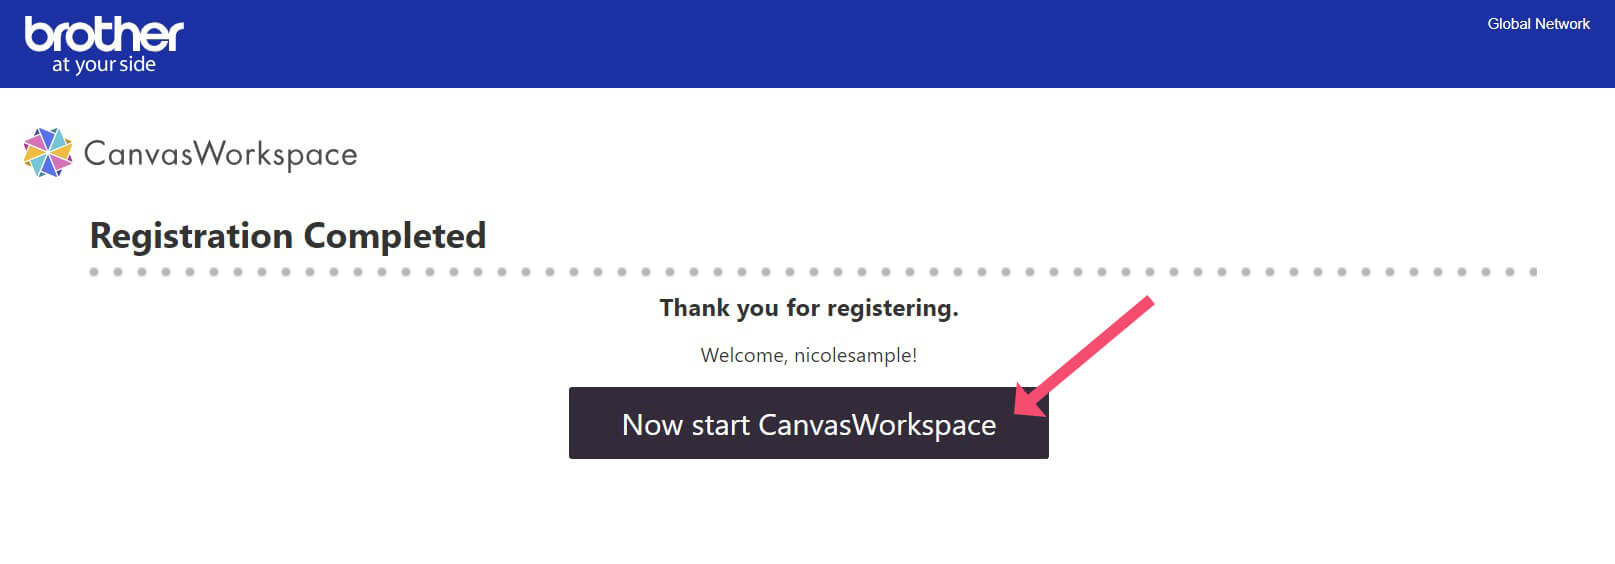 CanvasWorkspace Registration Complete